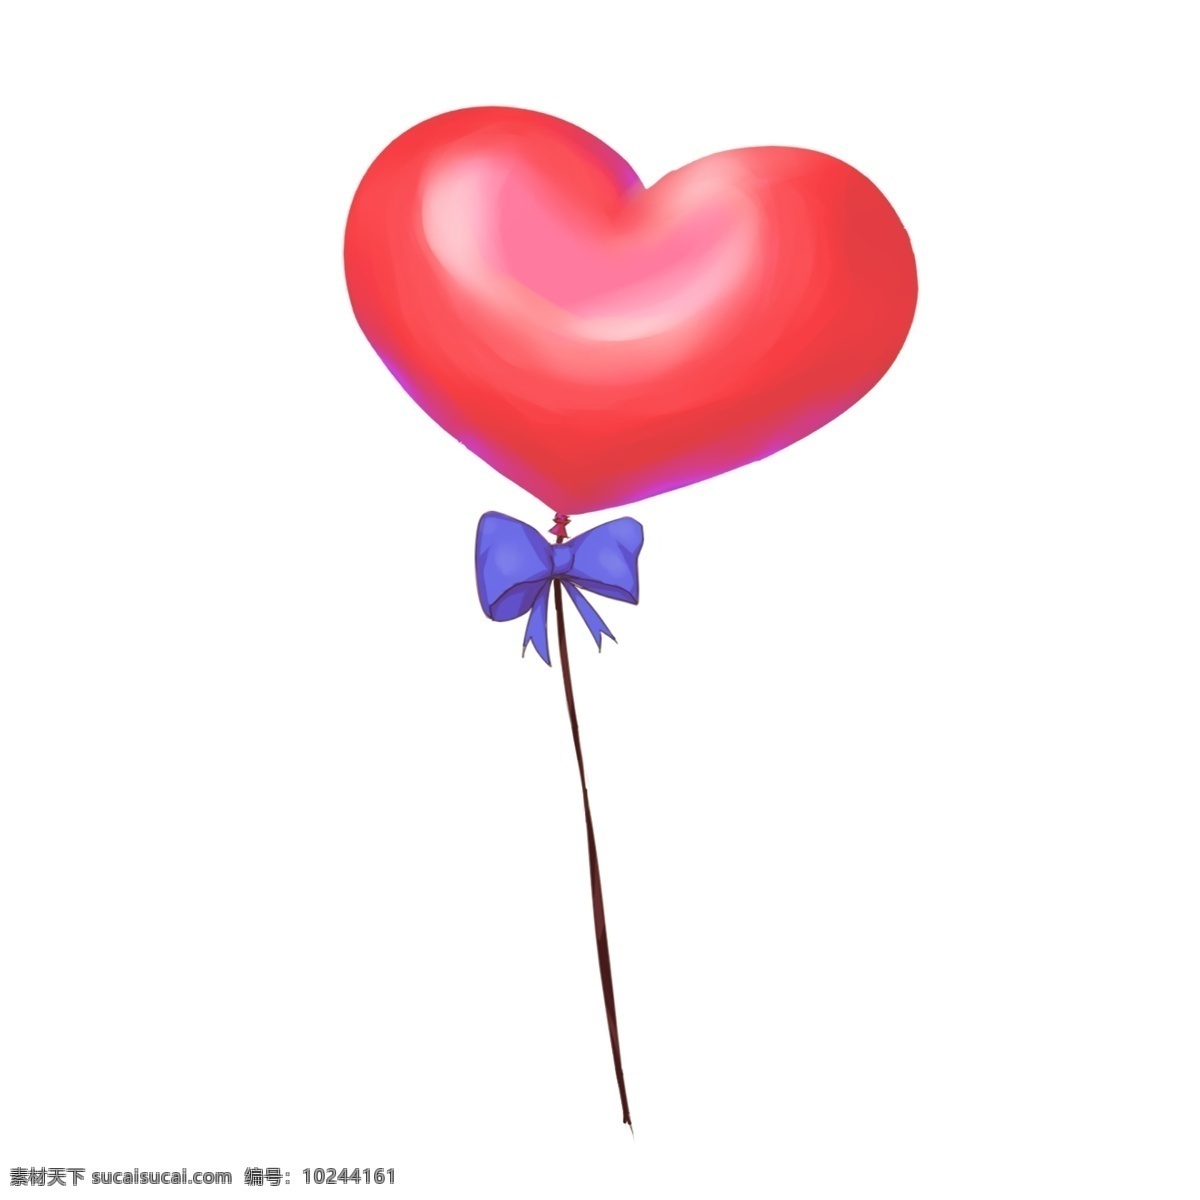 红色 心形 气球 插画 红色心形气球 氢气球 感恩节气球 爱心气球 一颗气球 红色气球 卡通气球 装饰